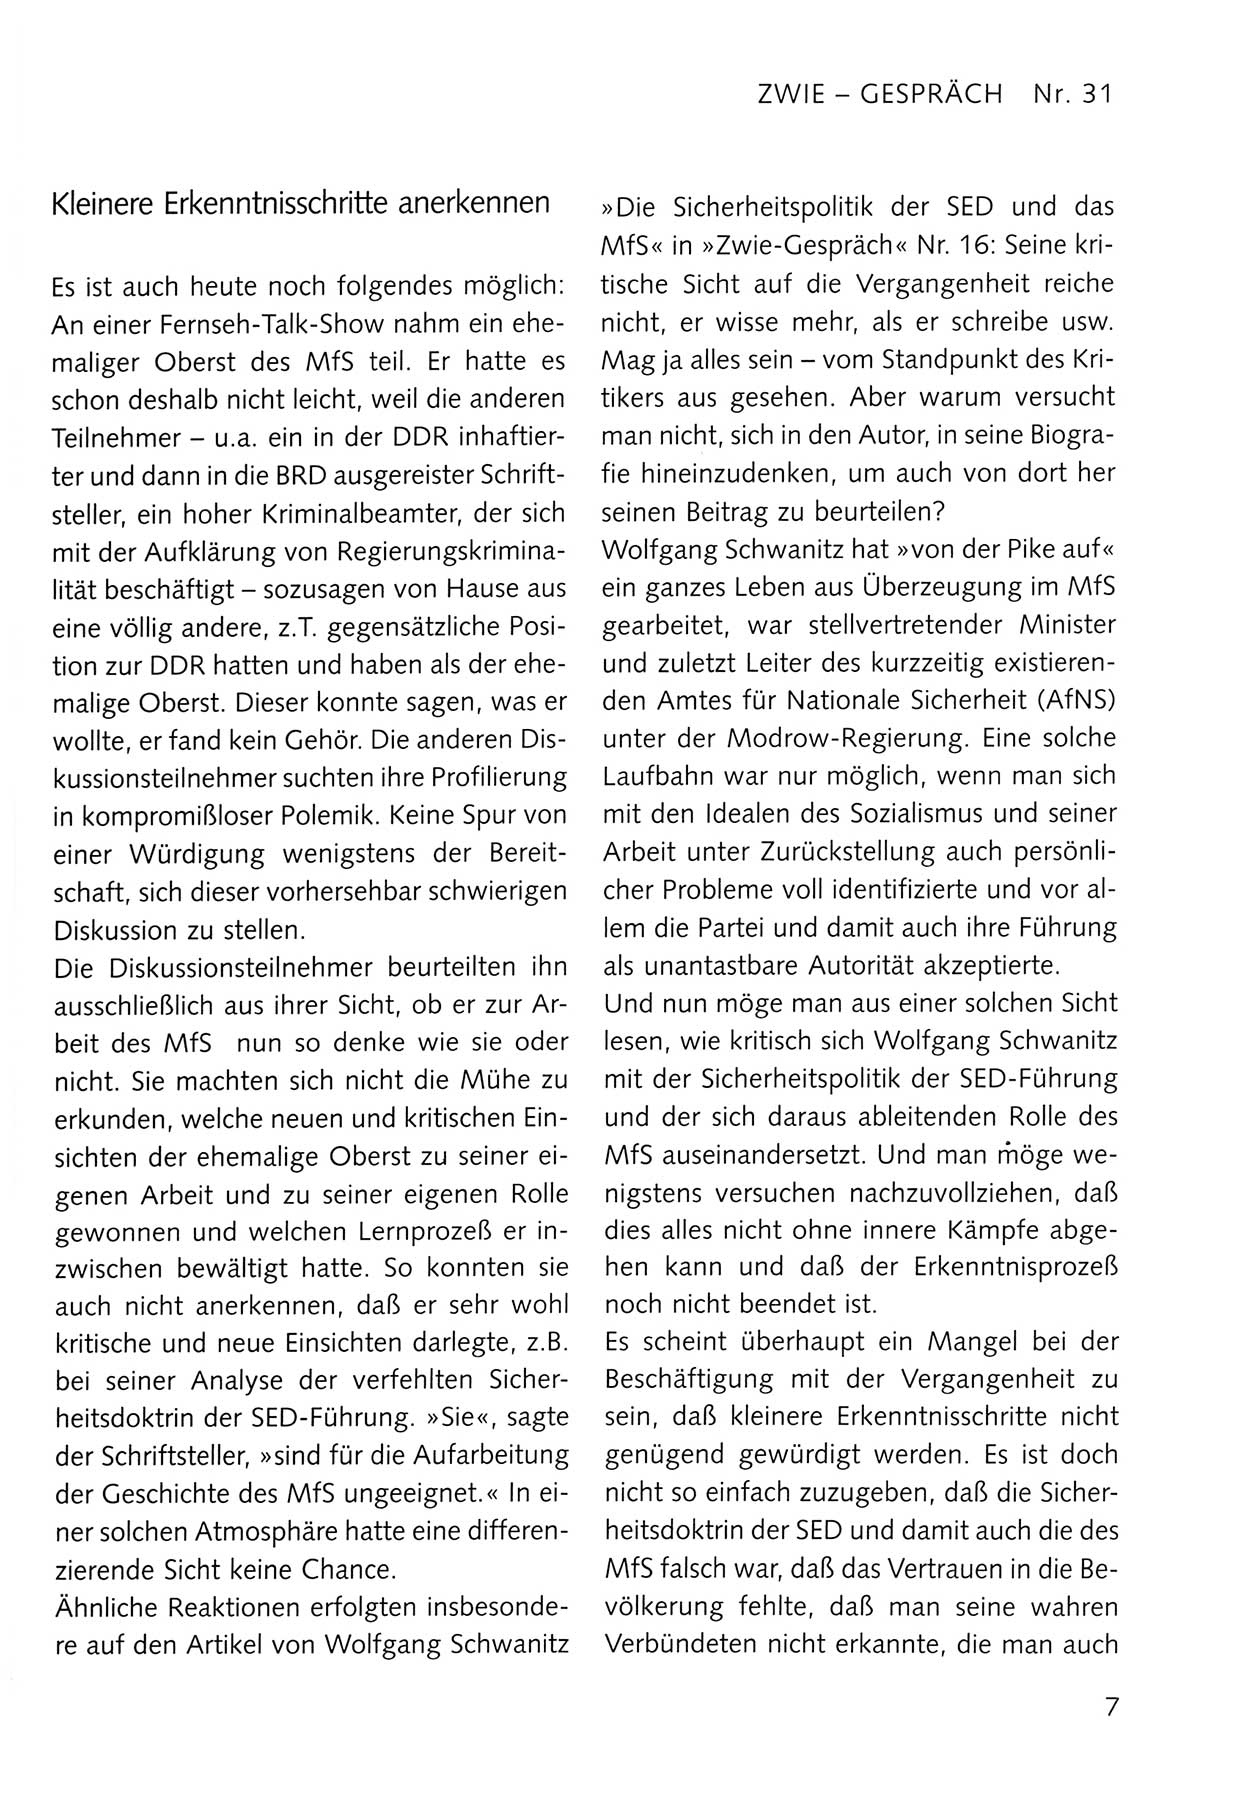 Zwie-Gespräch, Beiträge zum Umgang mit der Staatssicherheits-Vergangenheit [Deutsche Demokratische Republik (DDR)], Ausgabe Nr. 31, Berlin 1995, Seite 7 (Zwie-Gespr. Ausg. 31 1995, S. 7)